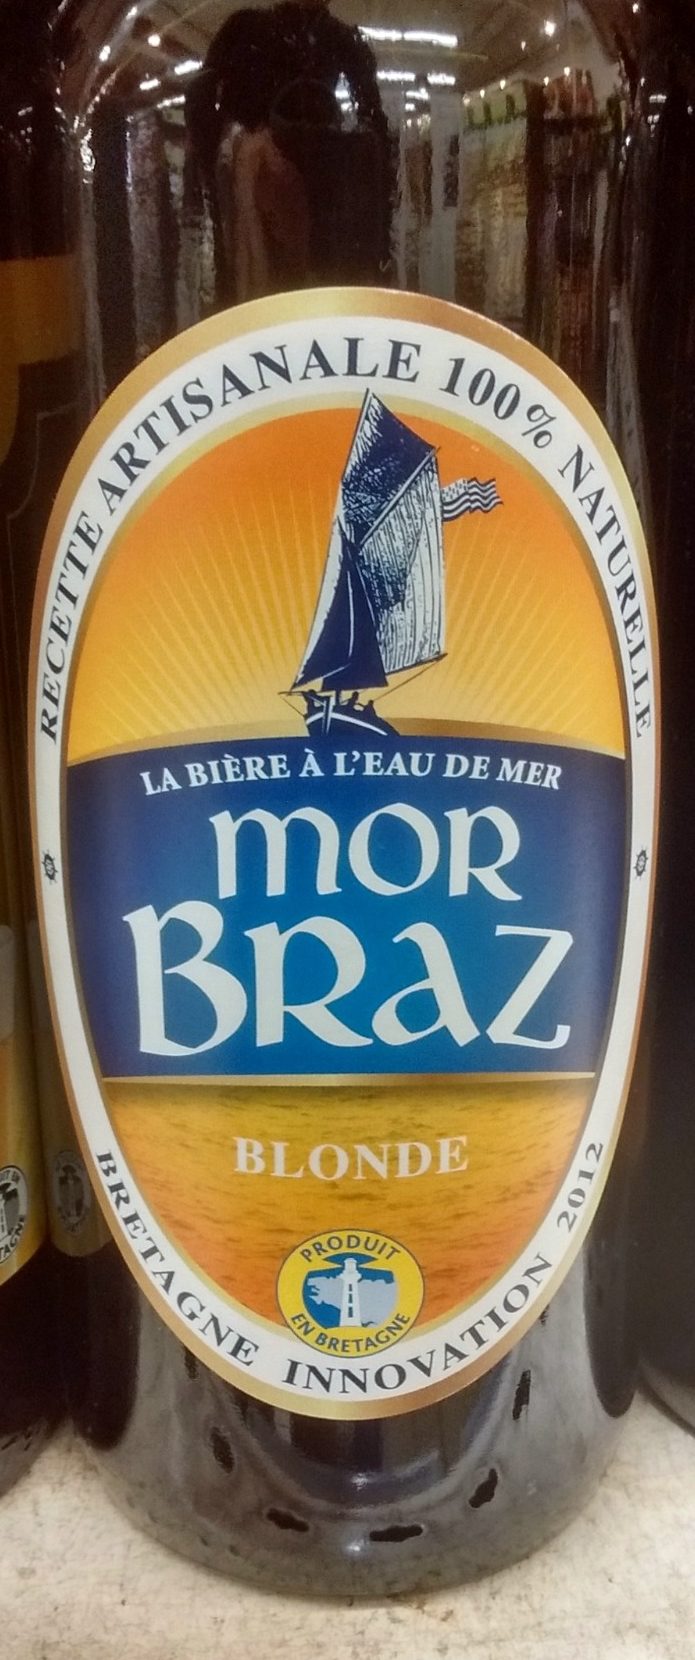 Mor Braz Blonde (4.5%) Brasserie Mor Braz 75 CL - Product - fr